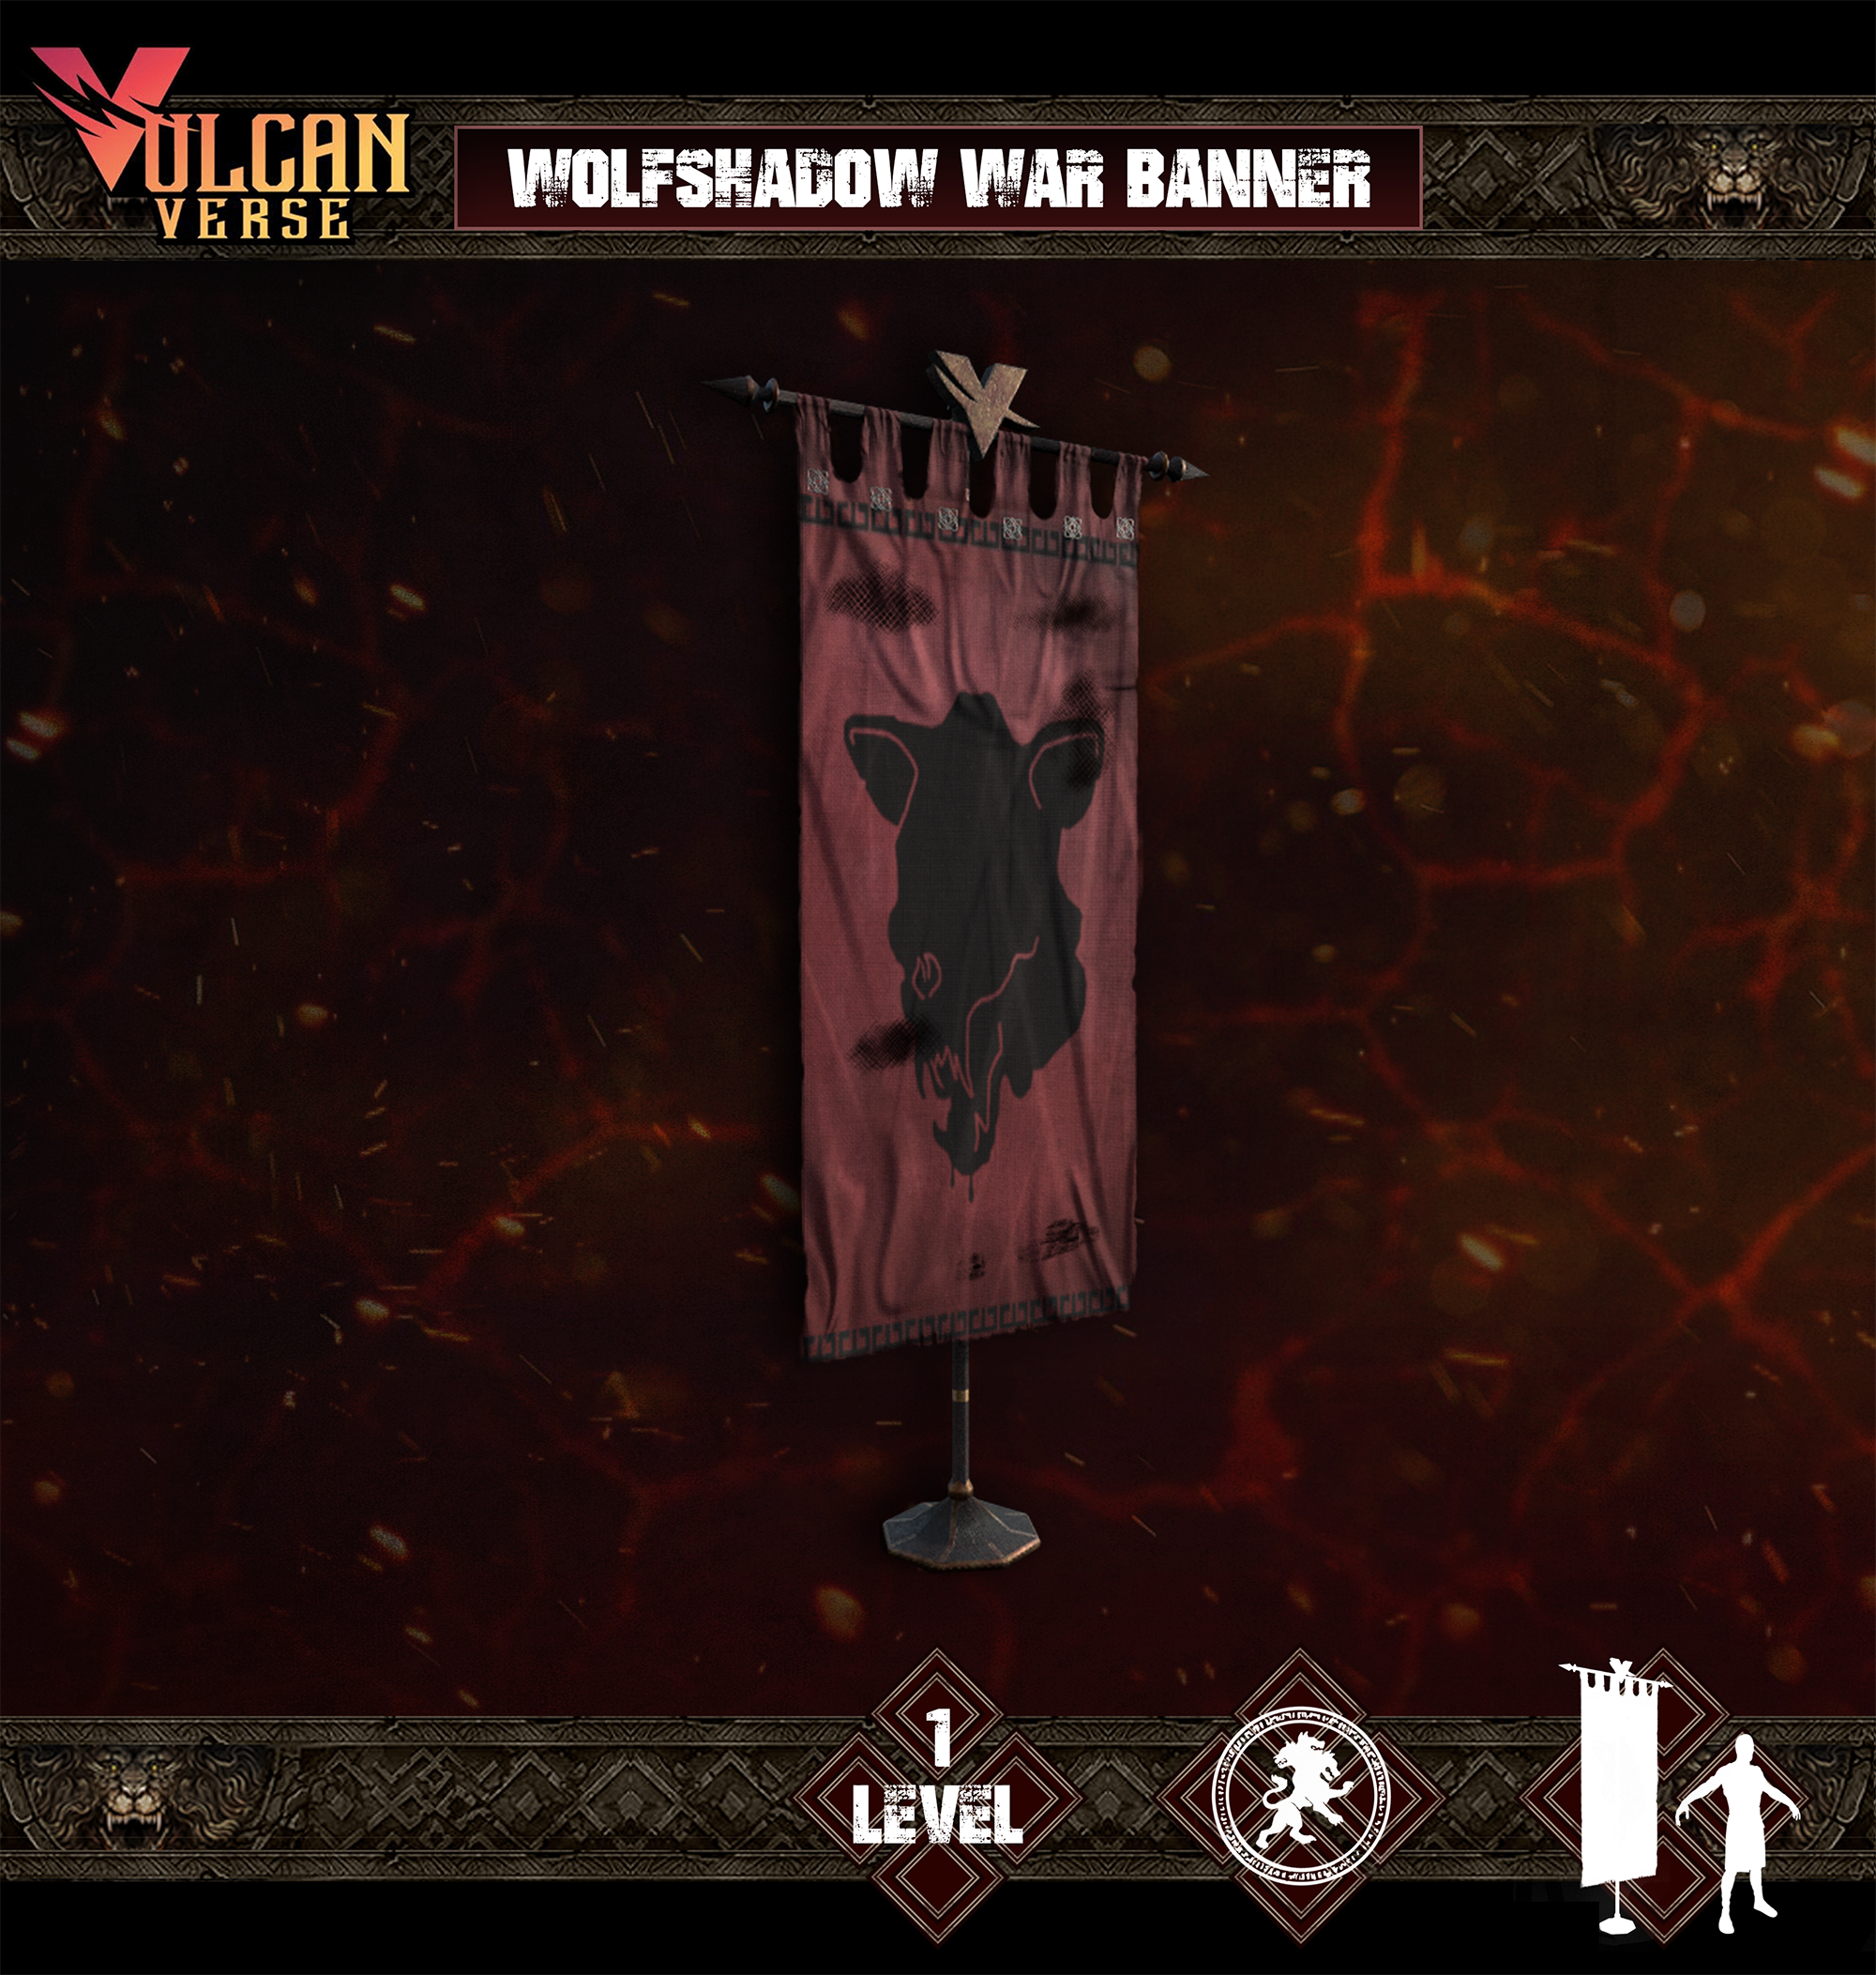 Wolfshadow War Banner